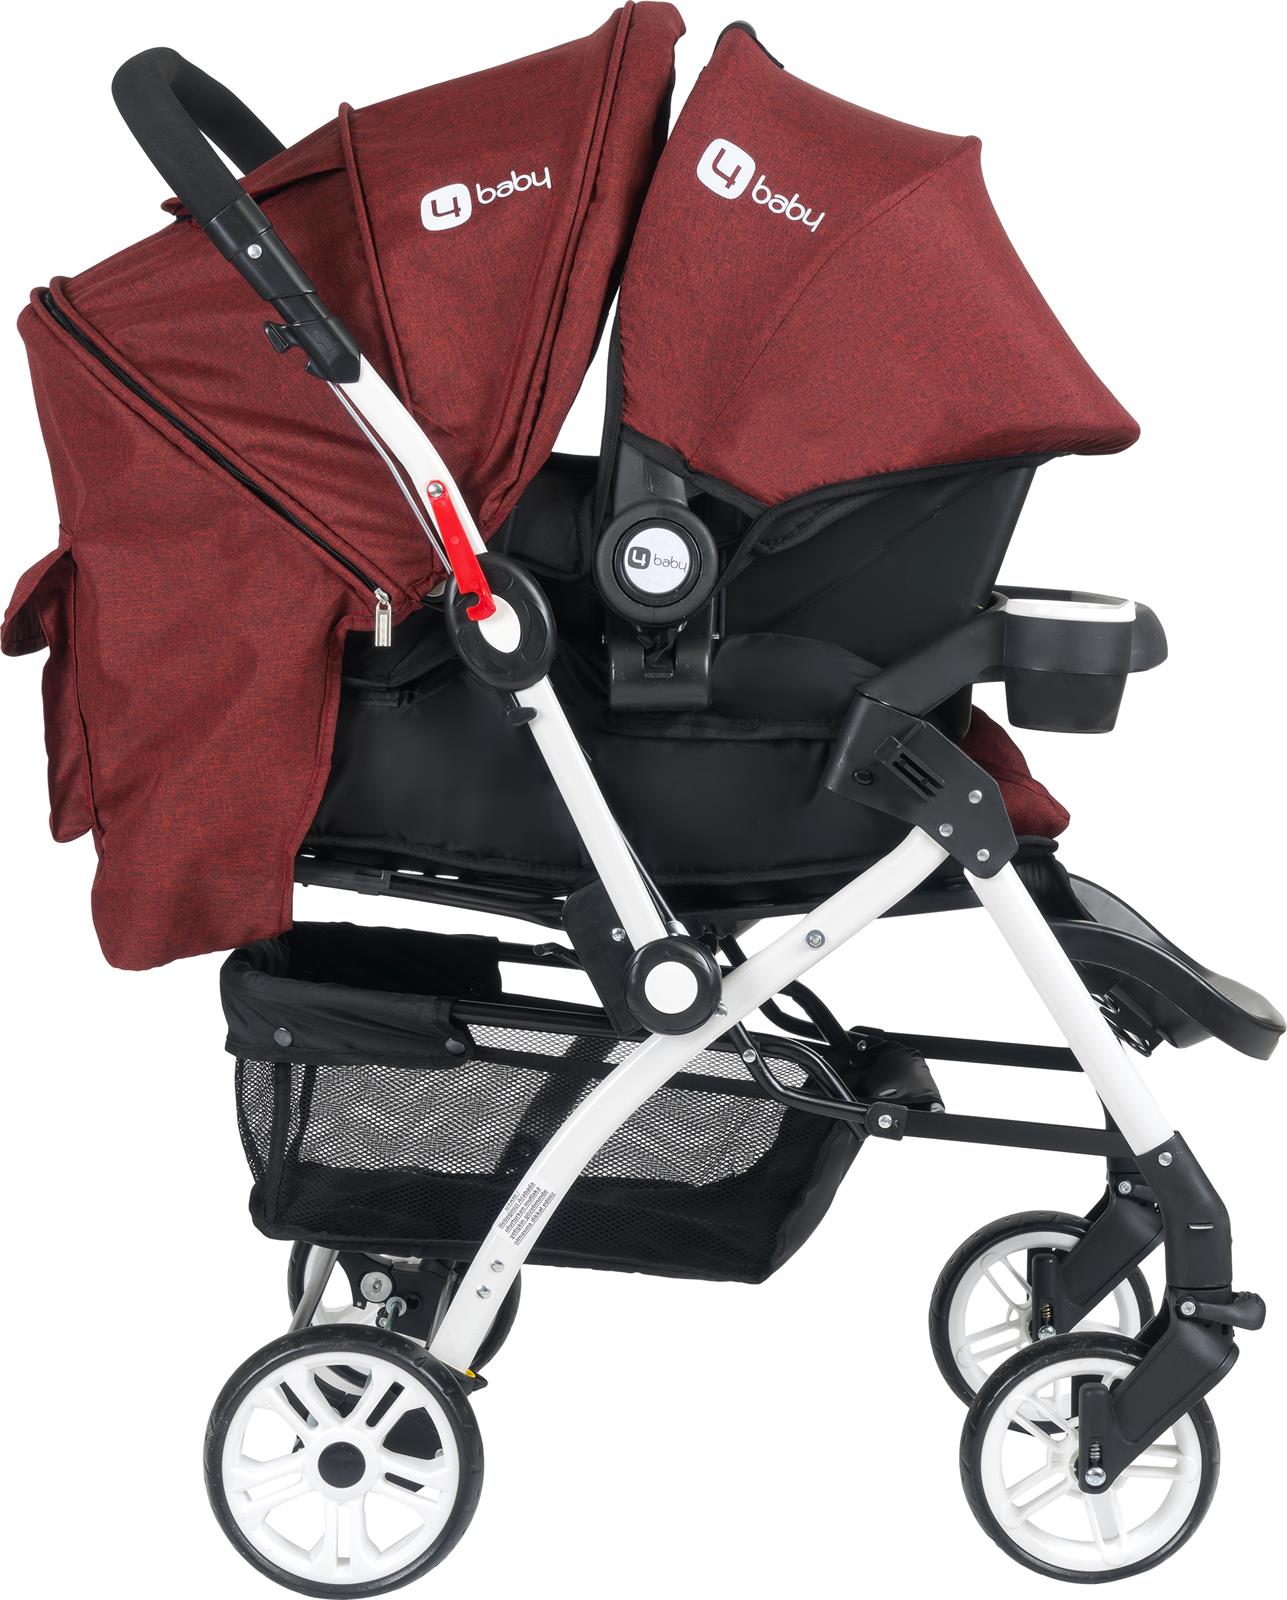 4 Baby Active Travel Sistem Bebek Arabası Kırmızı